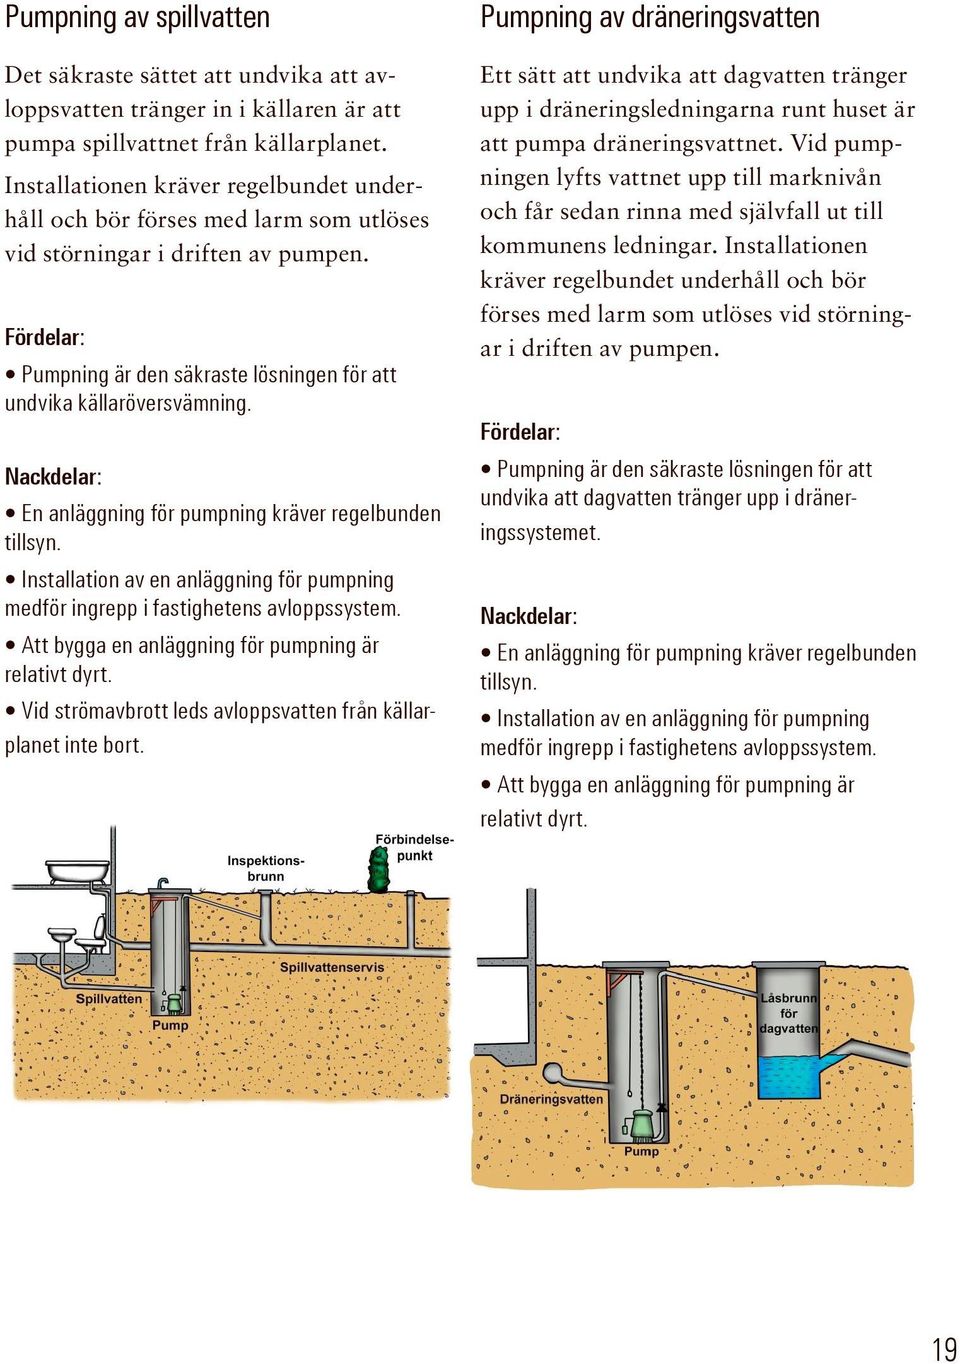 Nackdelar: En anläggning för pumpning kräver regelbunden tillsyn. Installation av en anläggning för pumpning medför ingrepp i fastighetens avloppssystem.